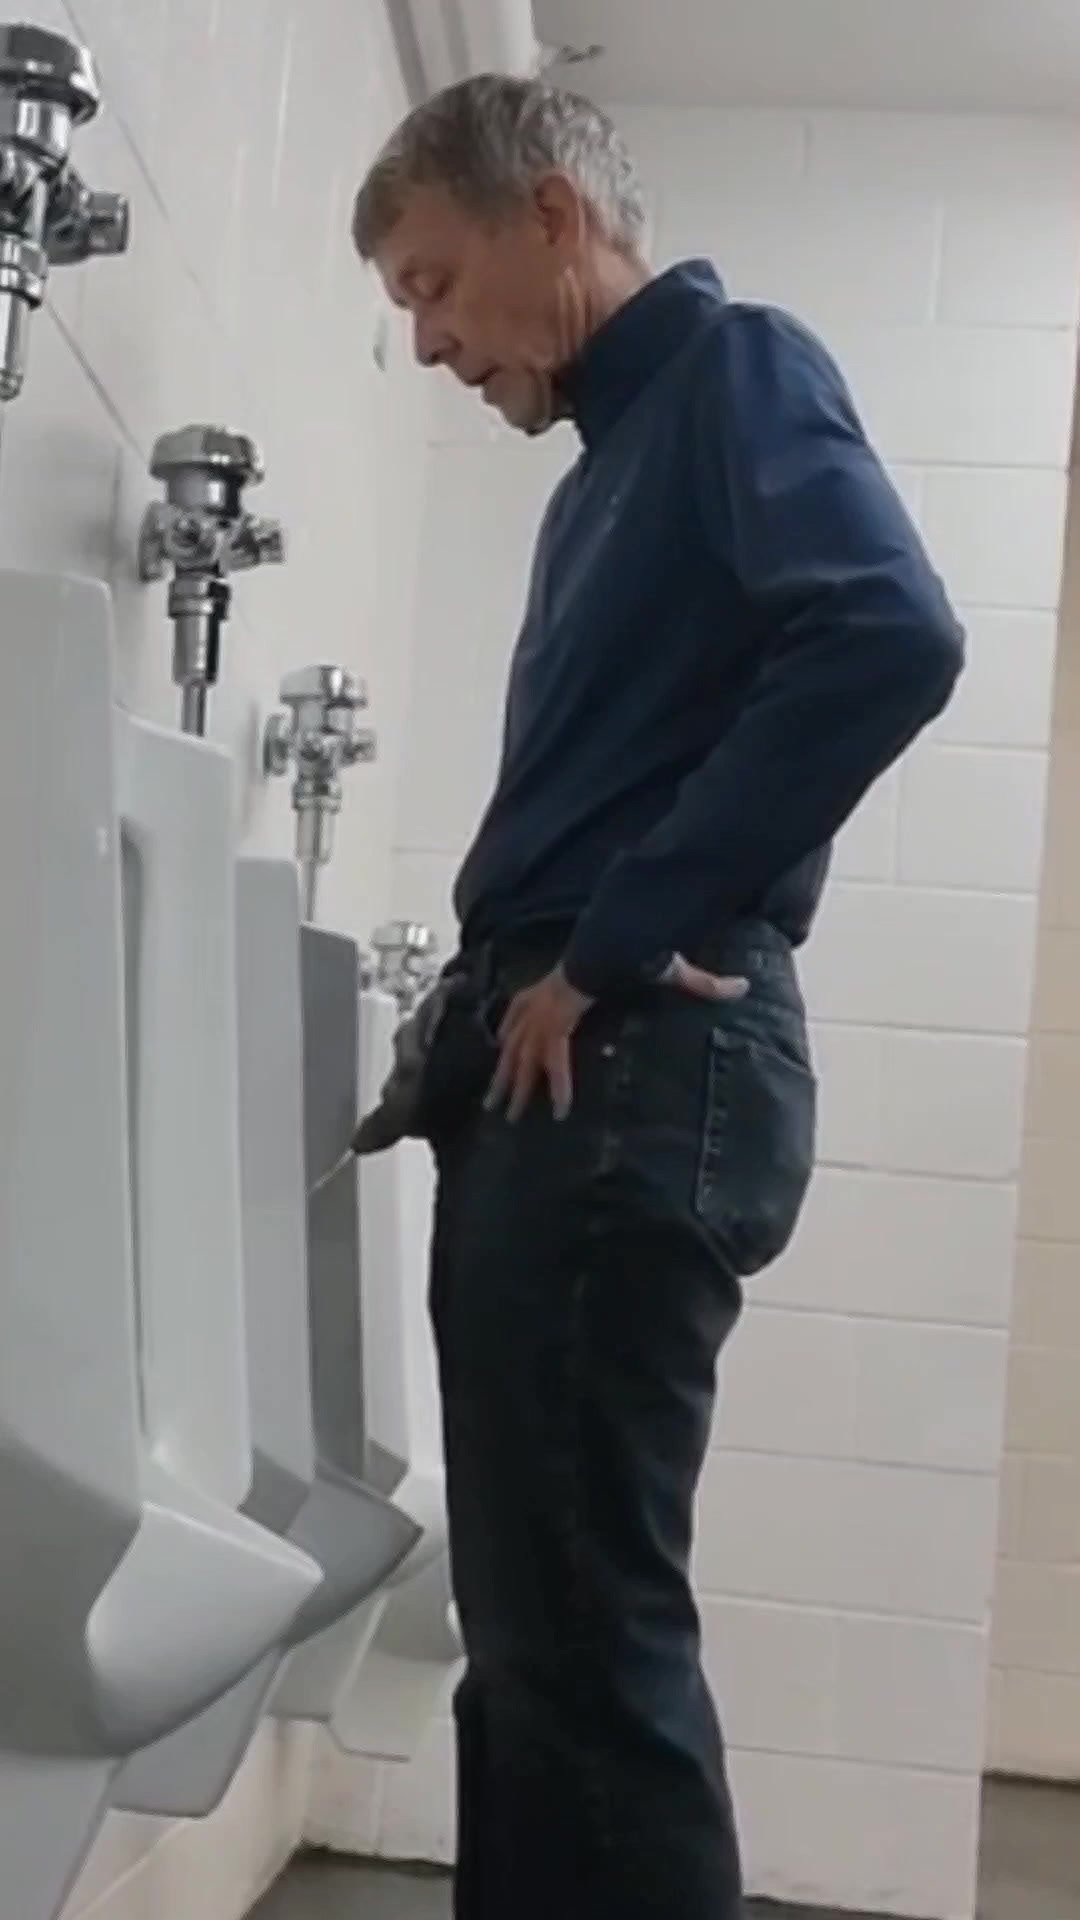 Skinny grandpa slender cock at urinal